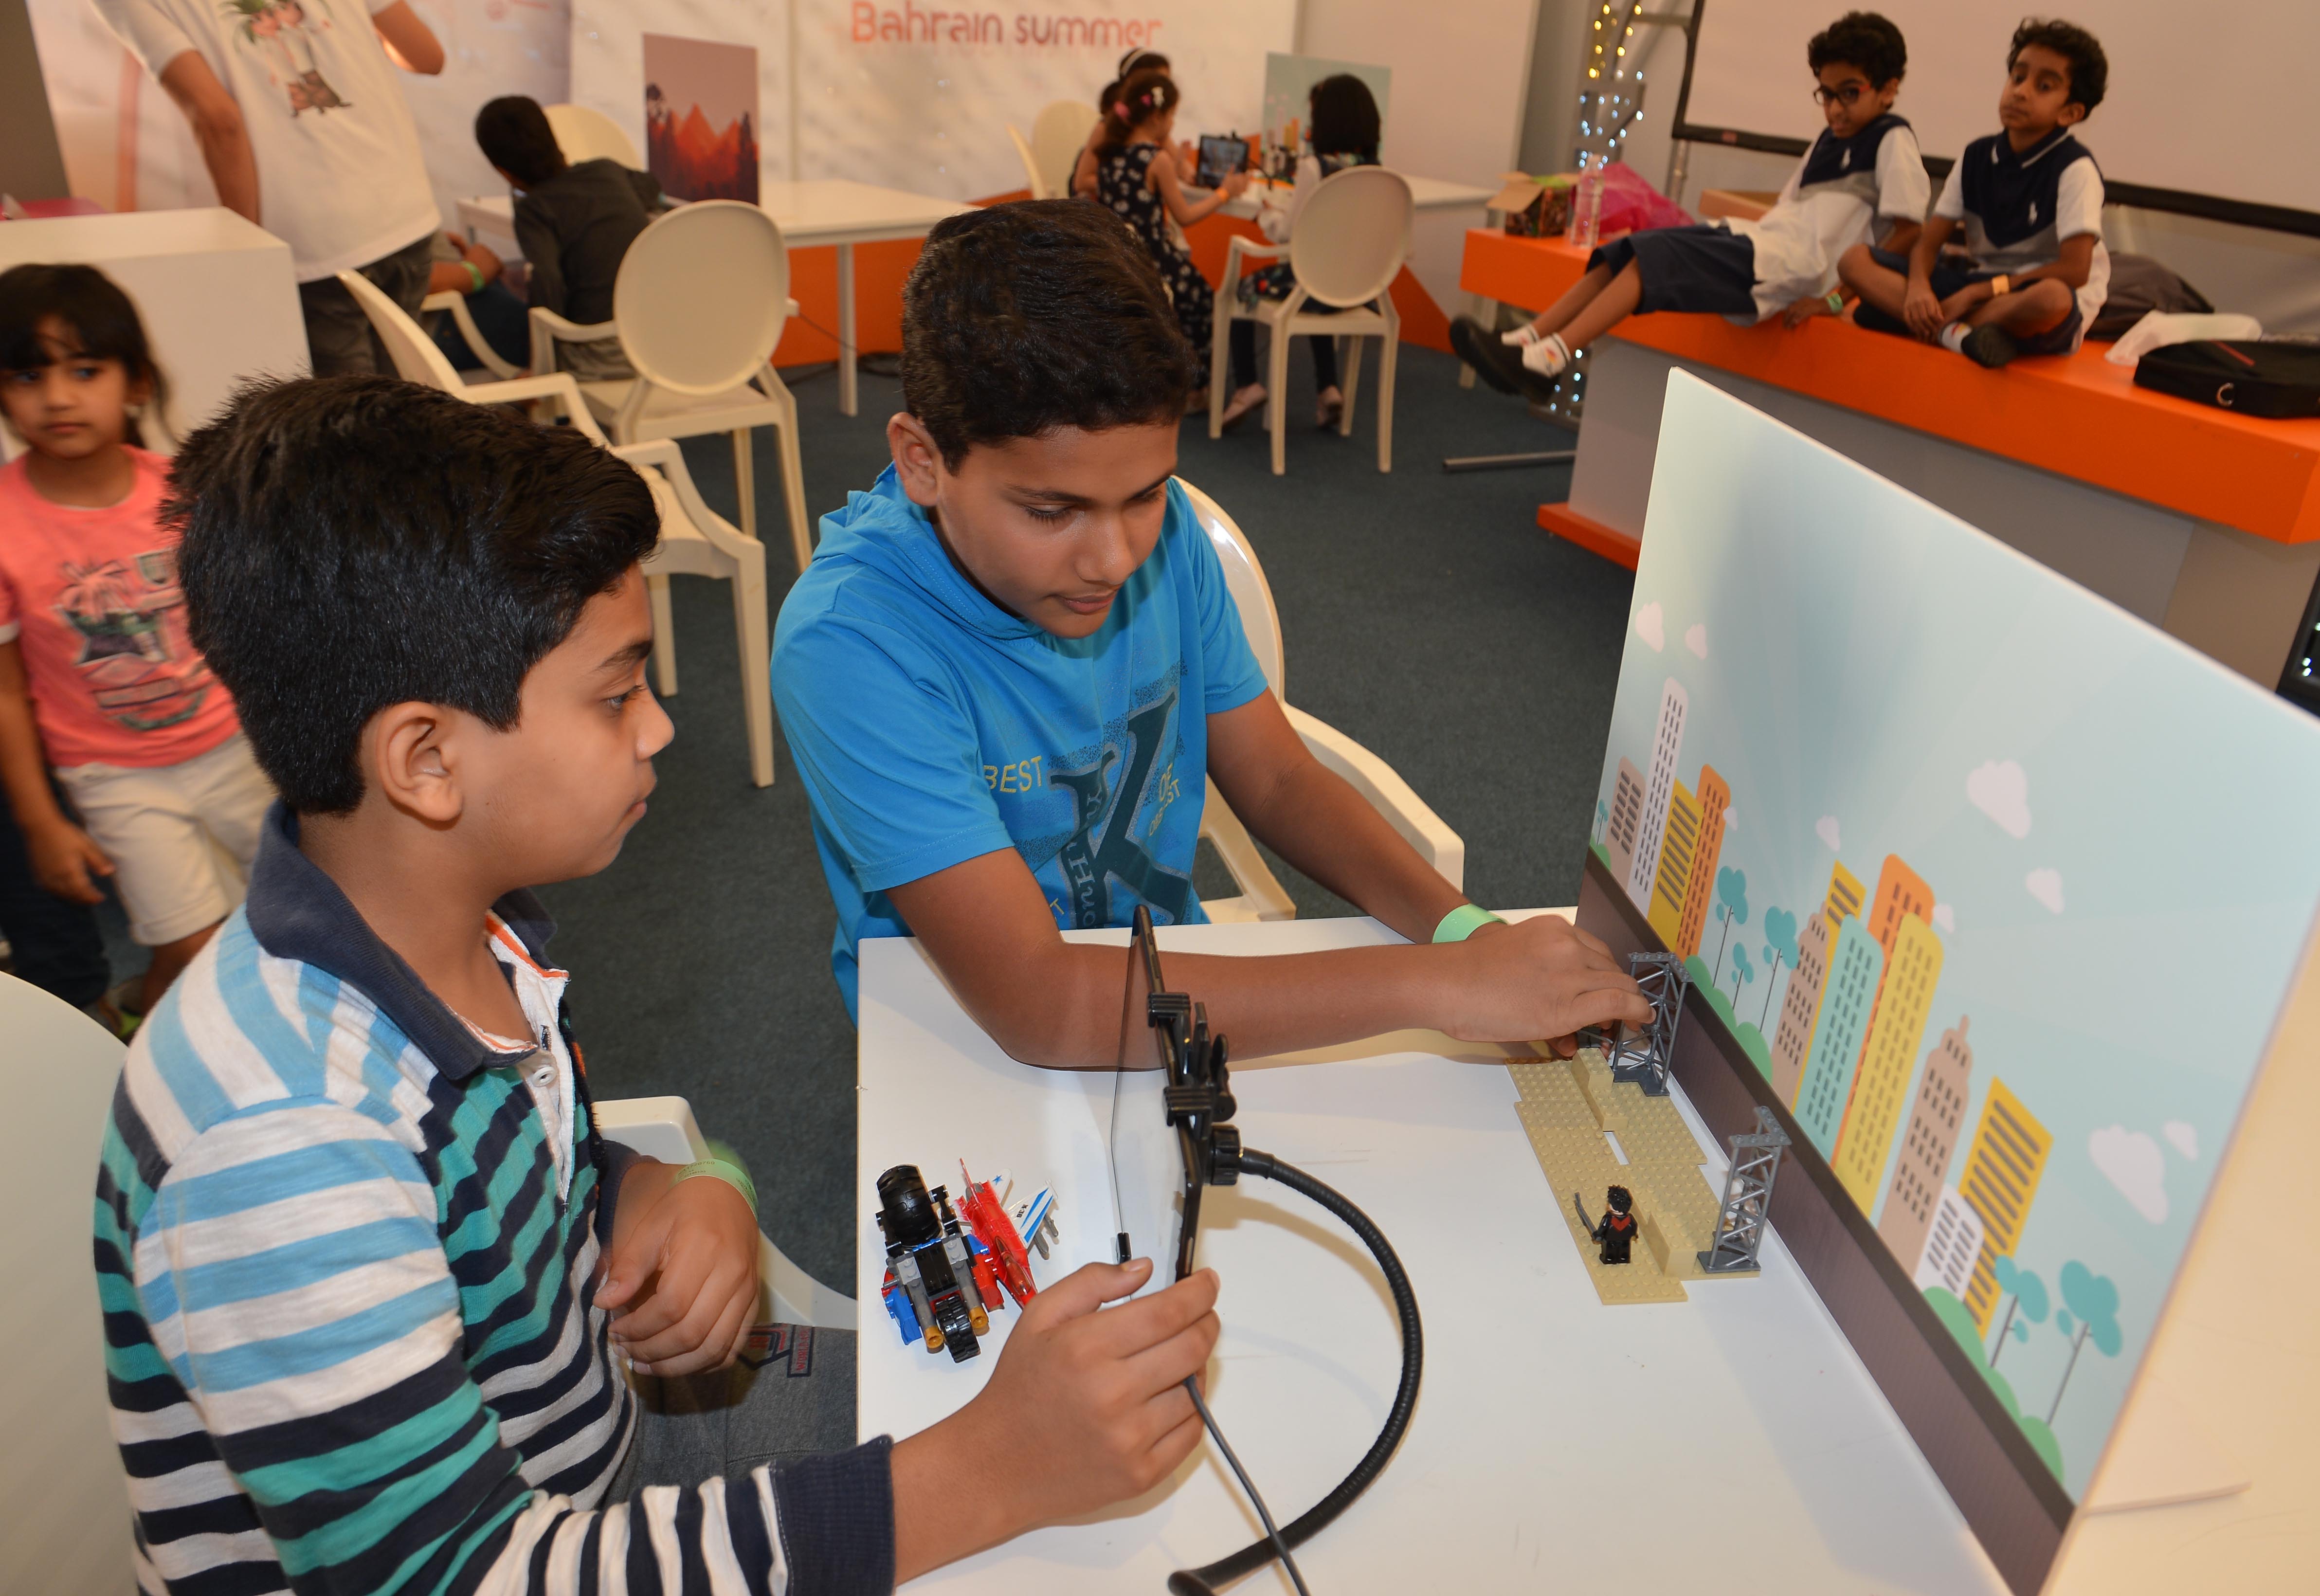 فعاليات الأطفال في مهرجان صيف البحرين 2014